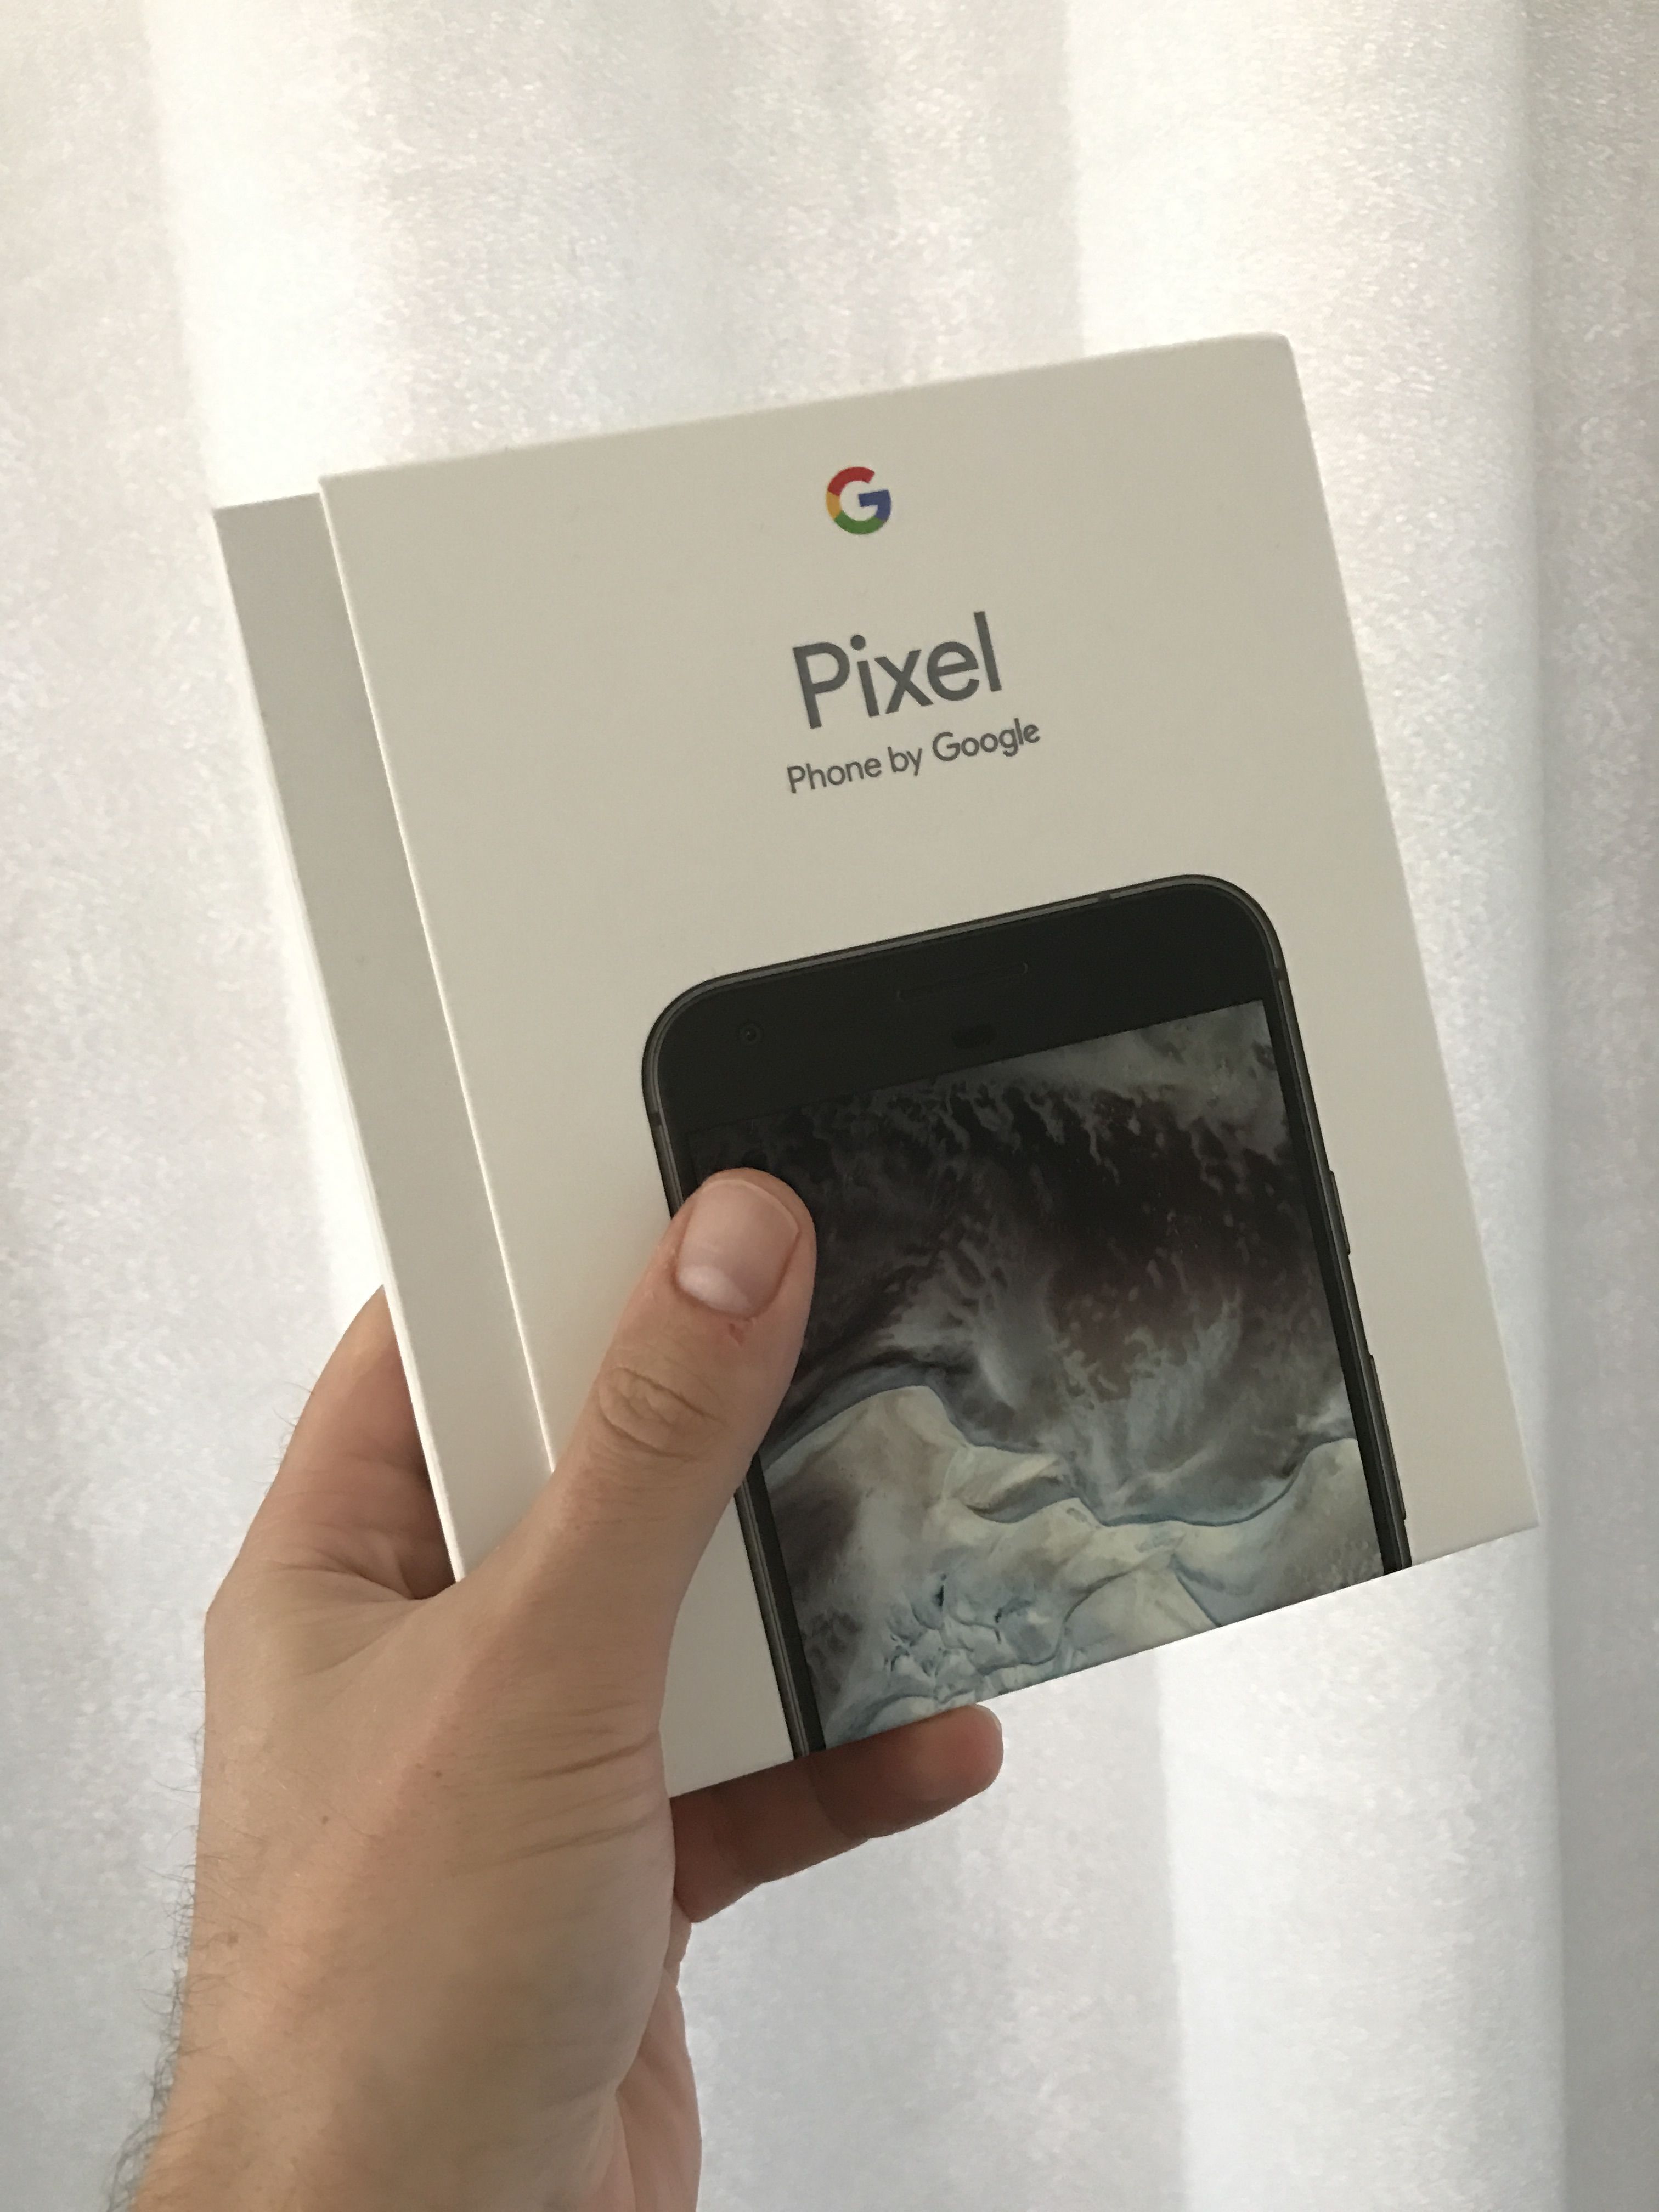 Vi pakker opp og tester Google Pixel. Fullverdig test kommer.